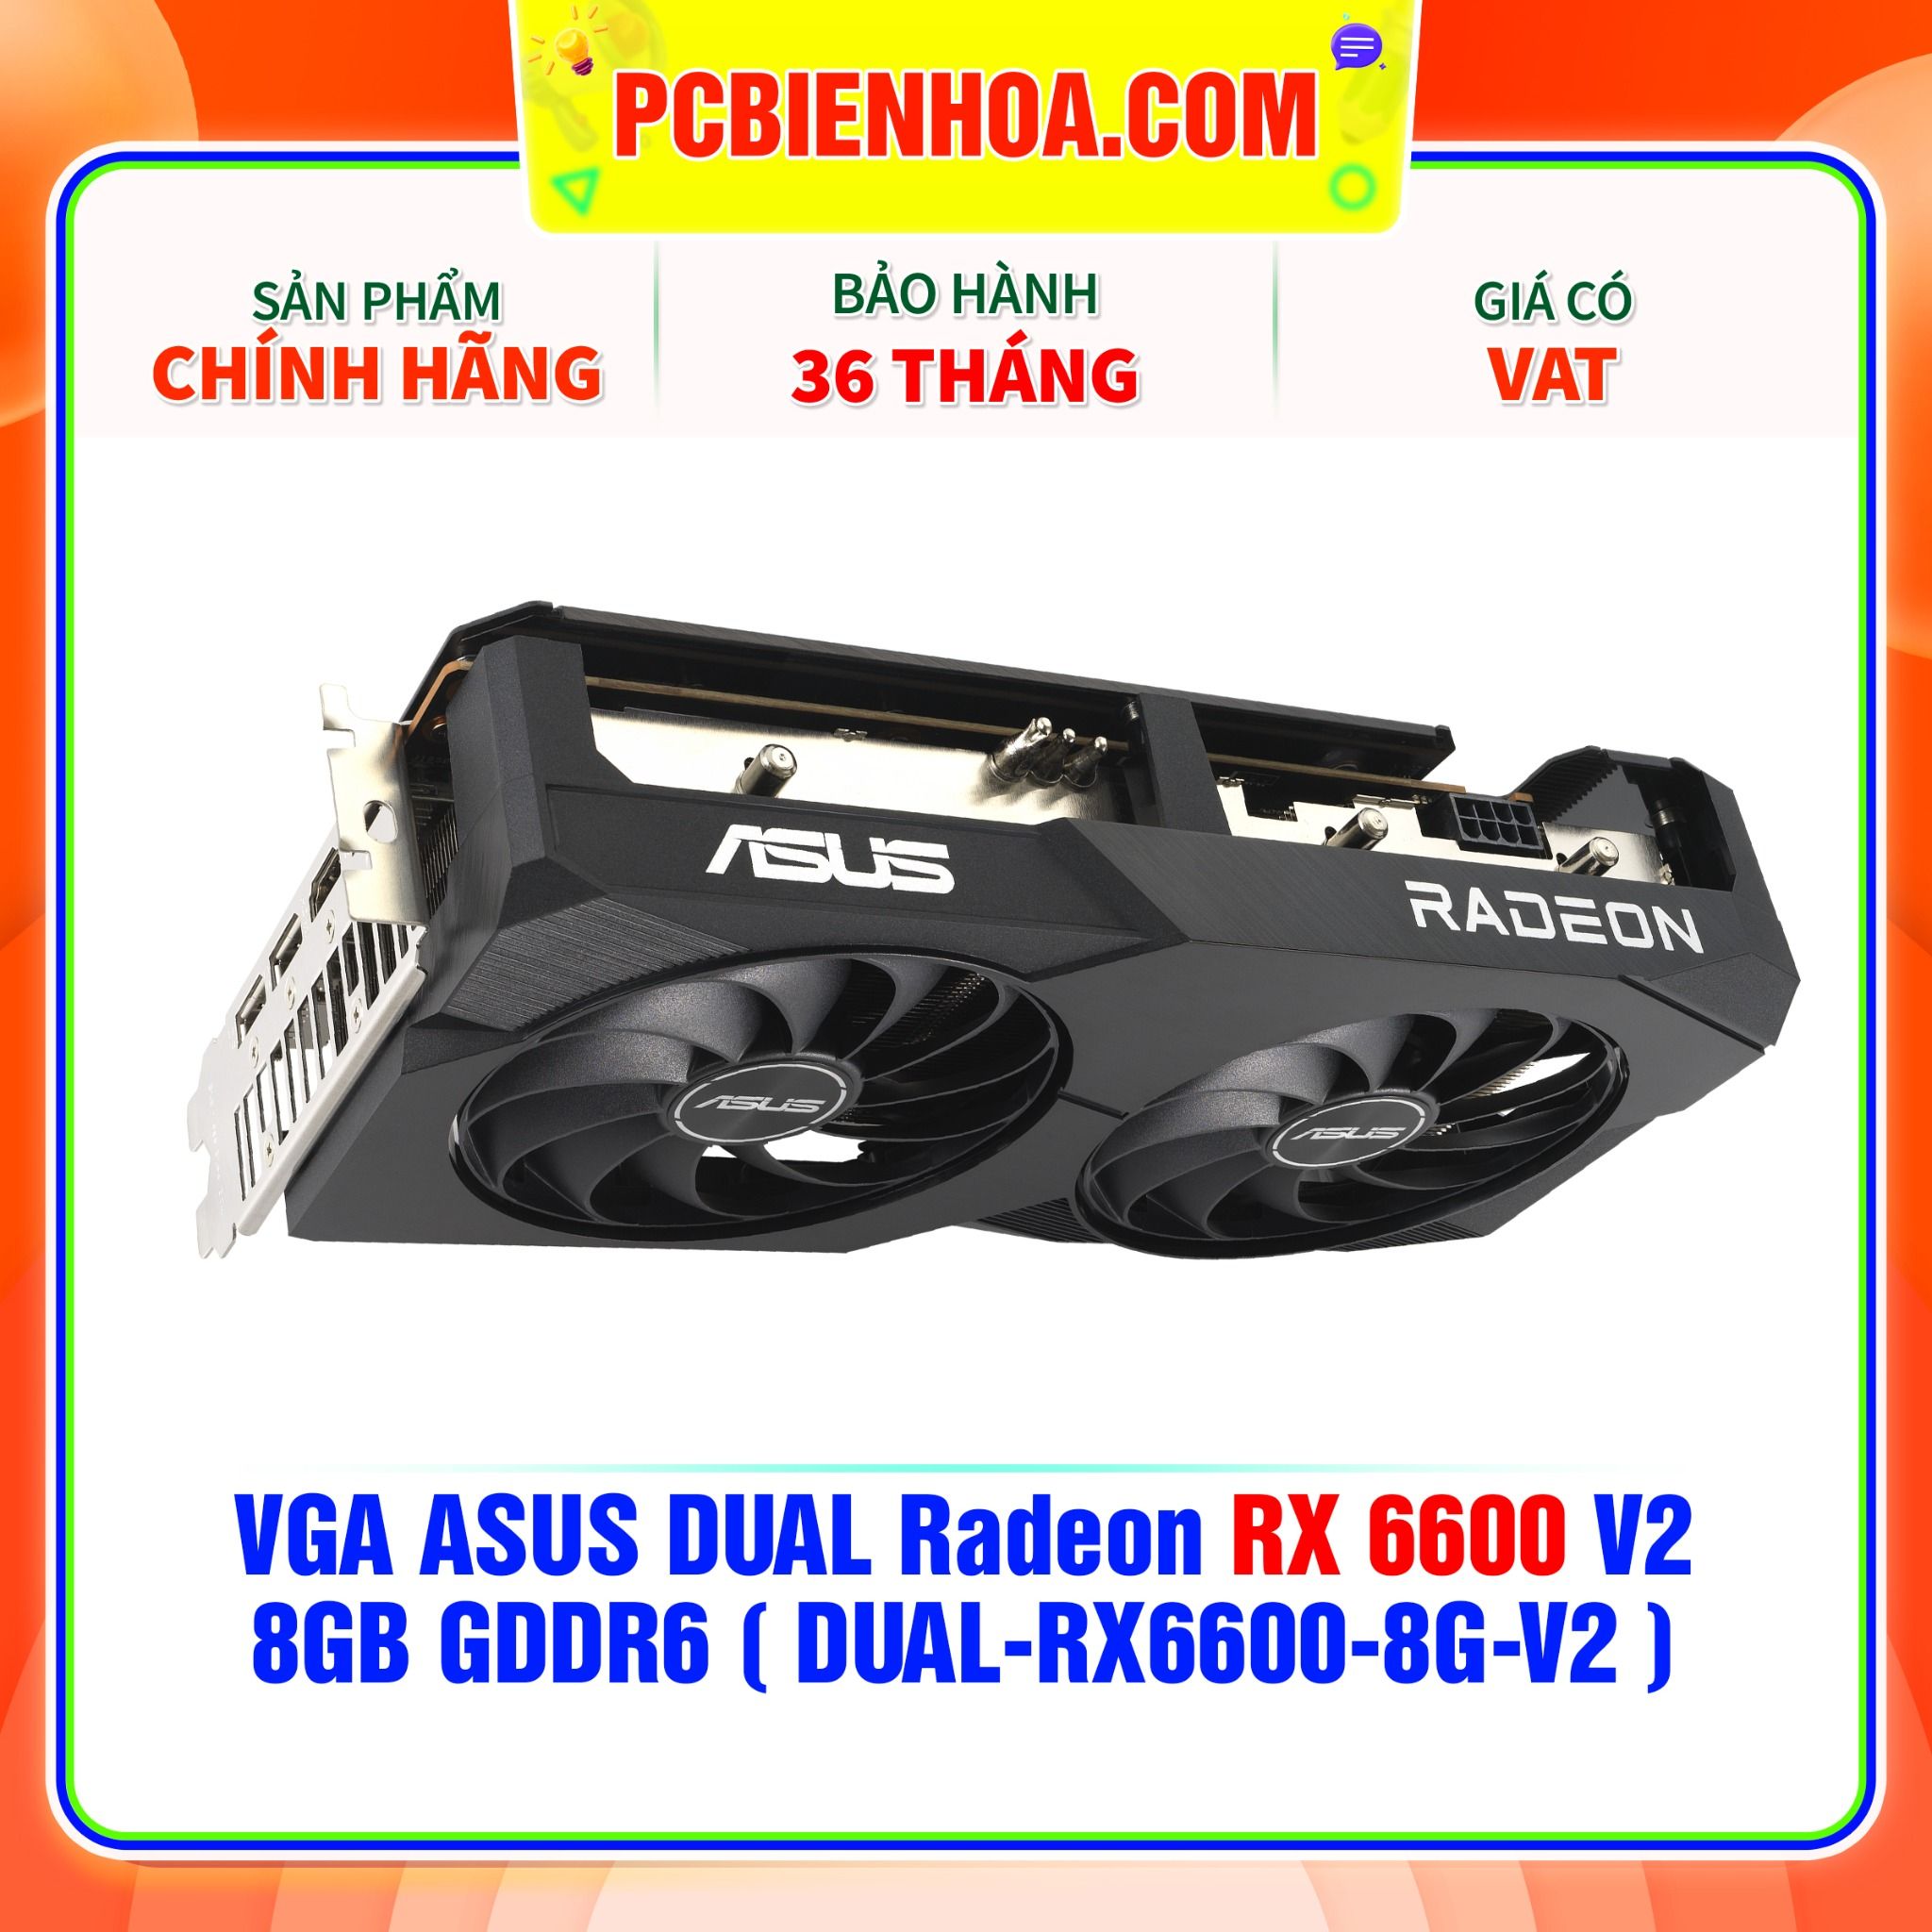  VGA ASUS DUAL Radeon RX 6600 V2 8GB GDDR6 ( DUAL-RX6600-8G-V2 ) 